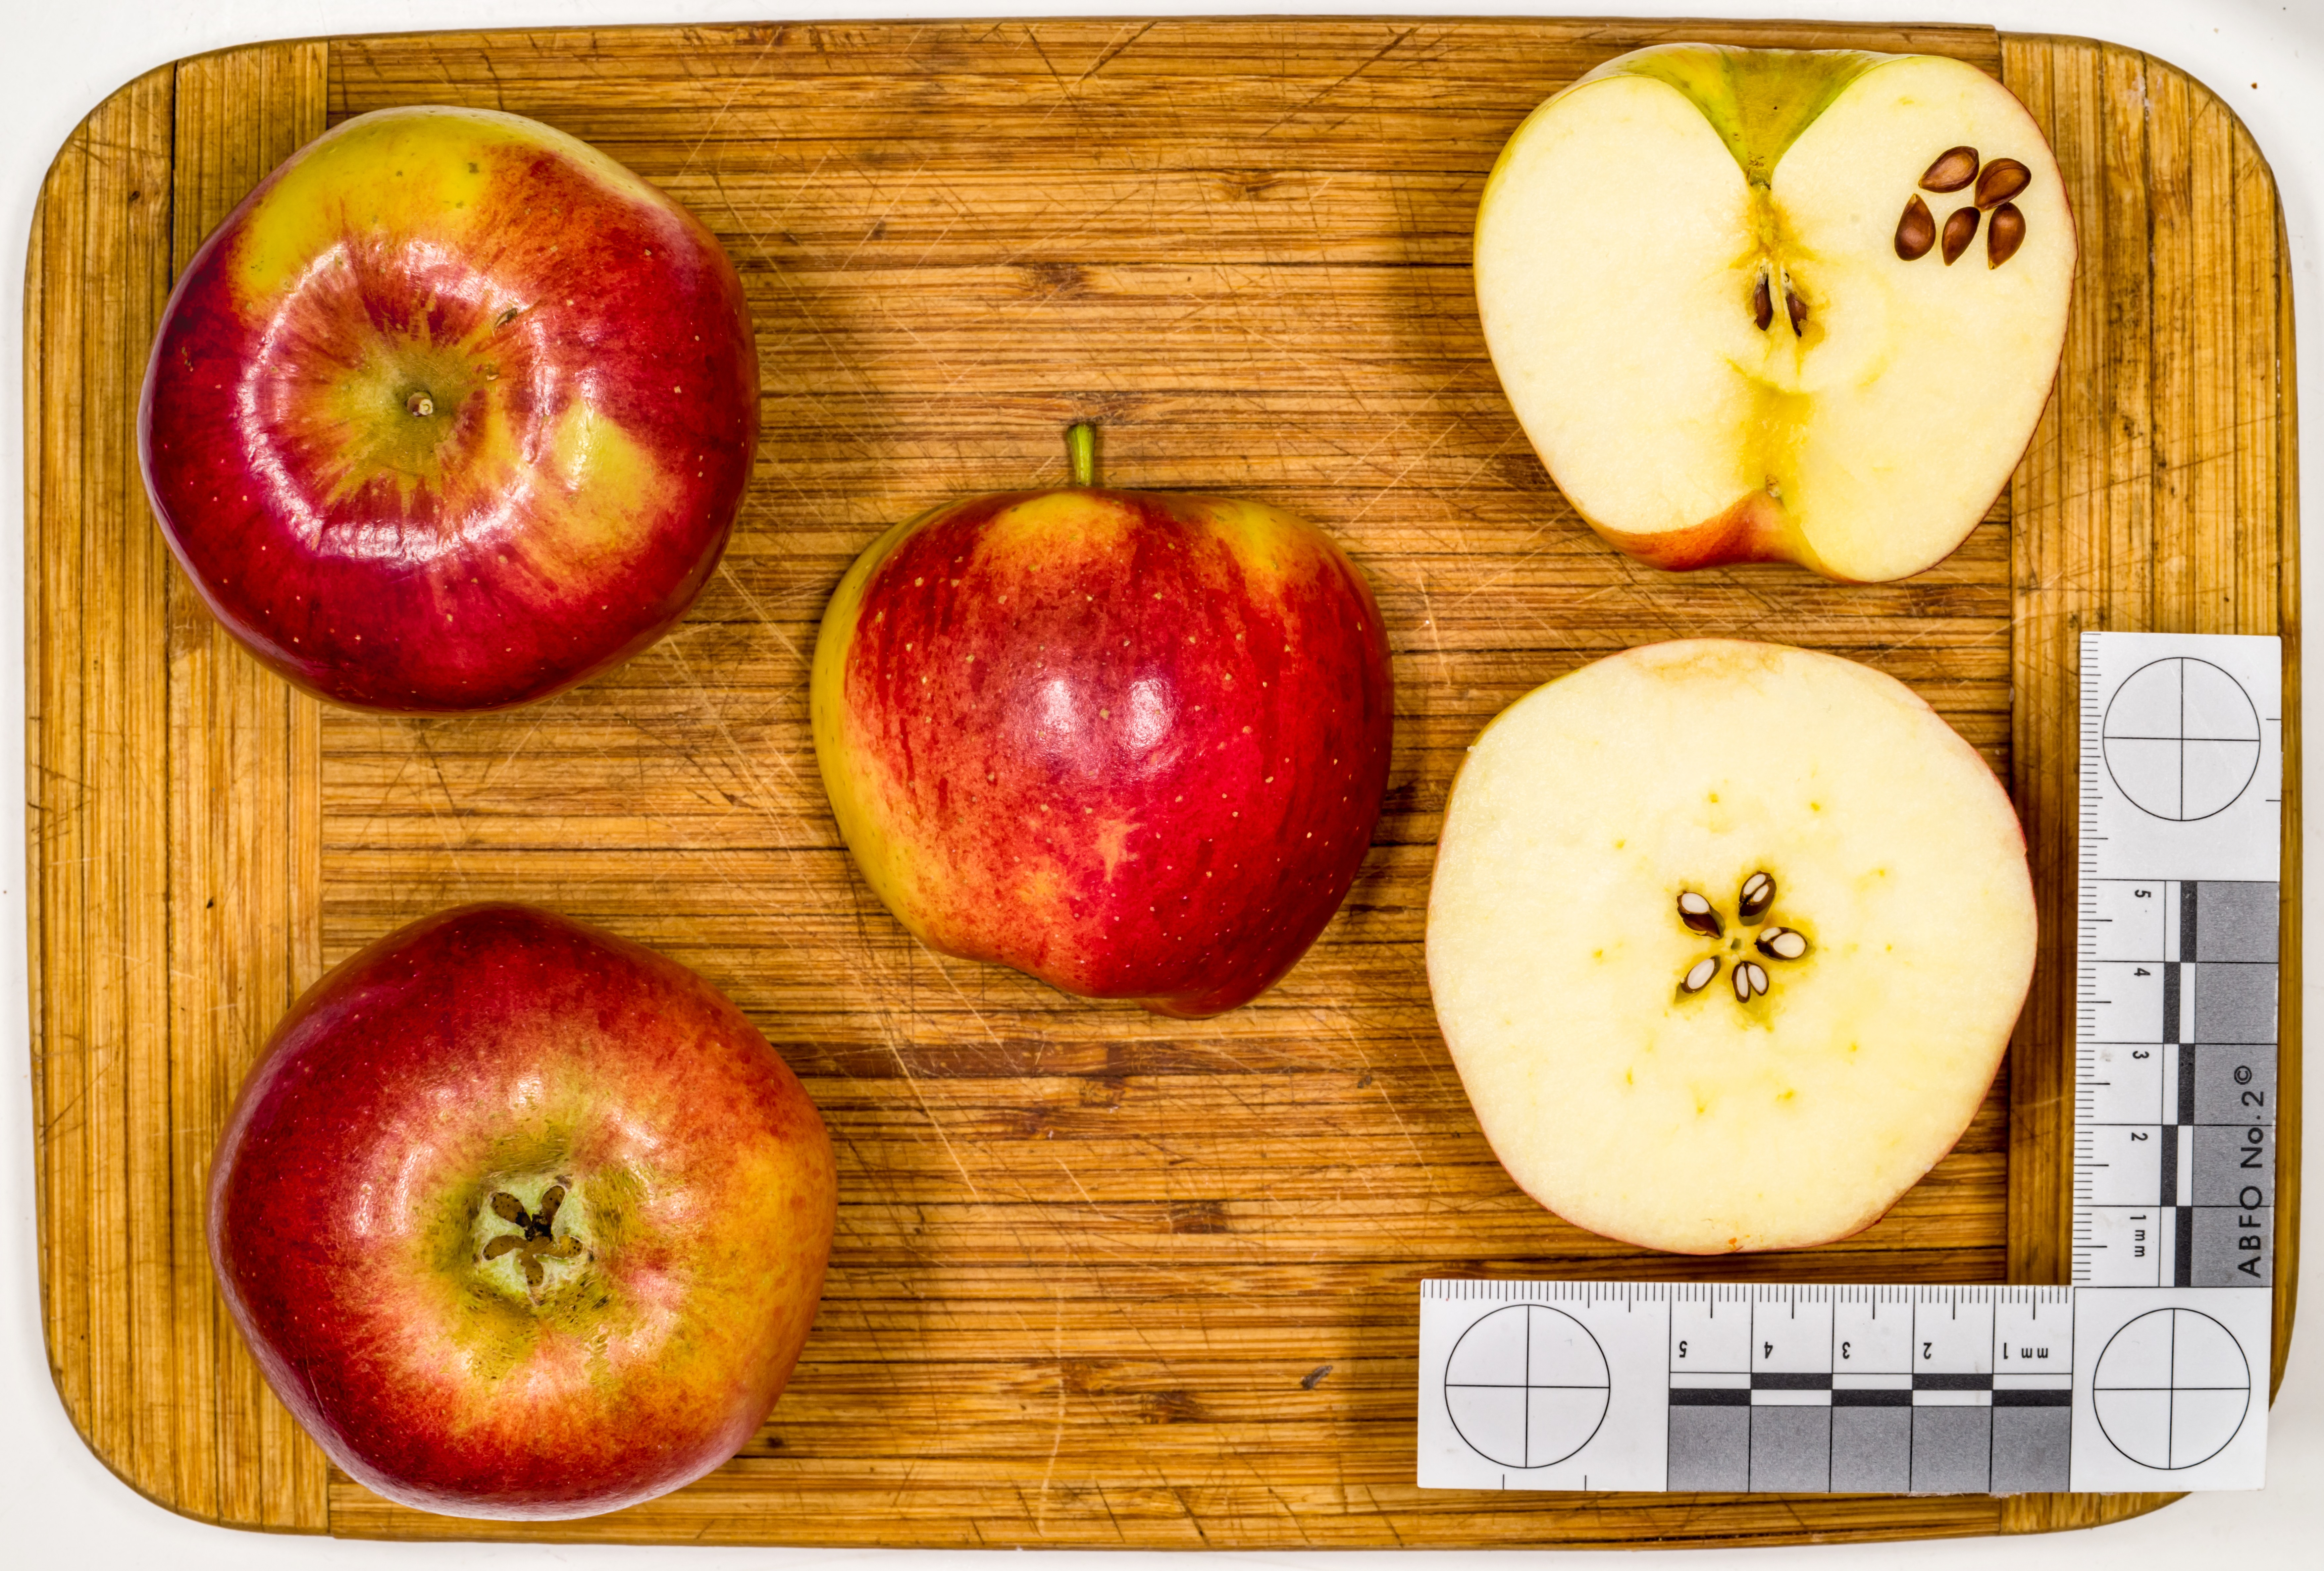 Амброзия сорт яблок фото и описание